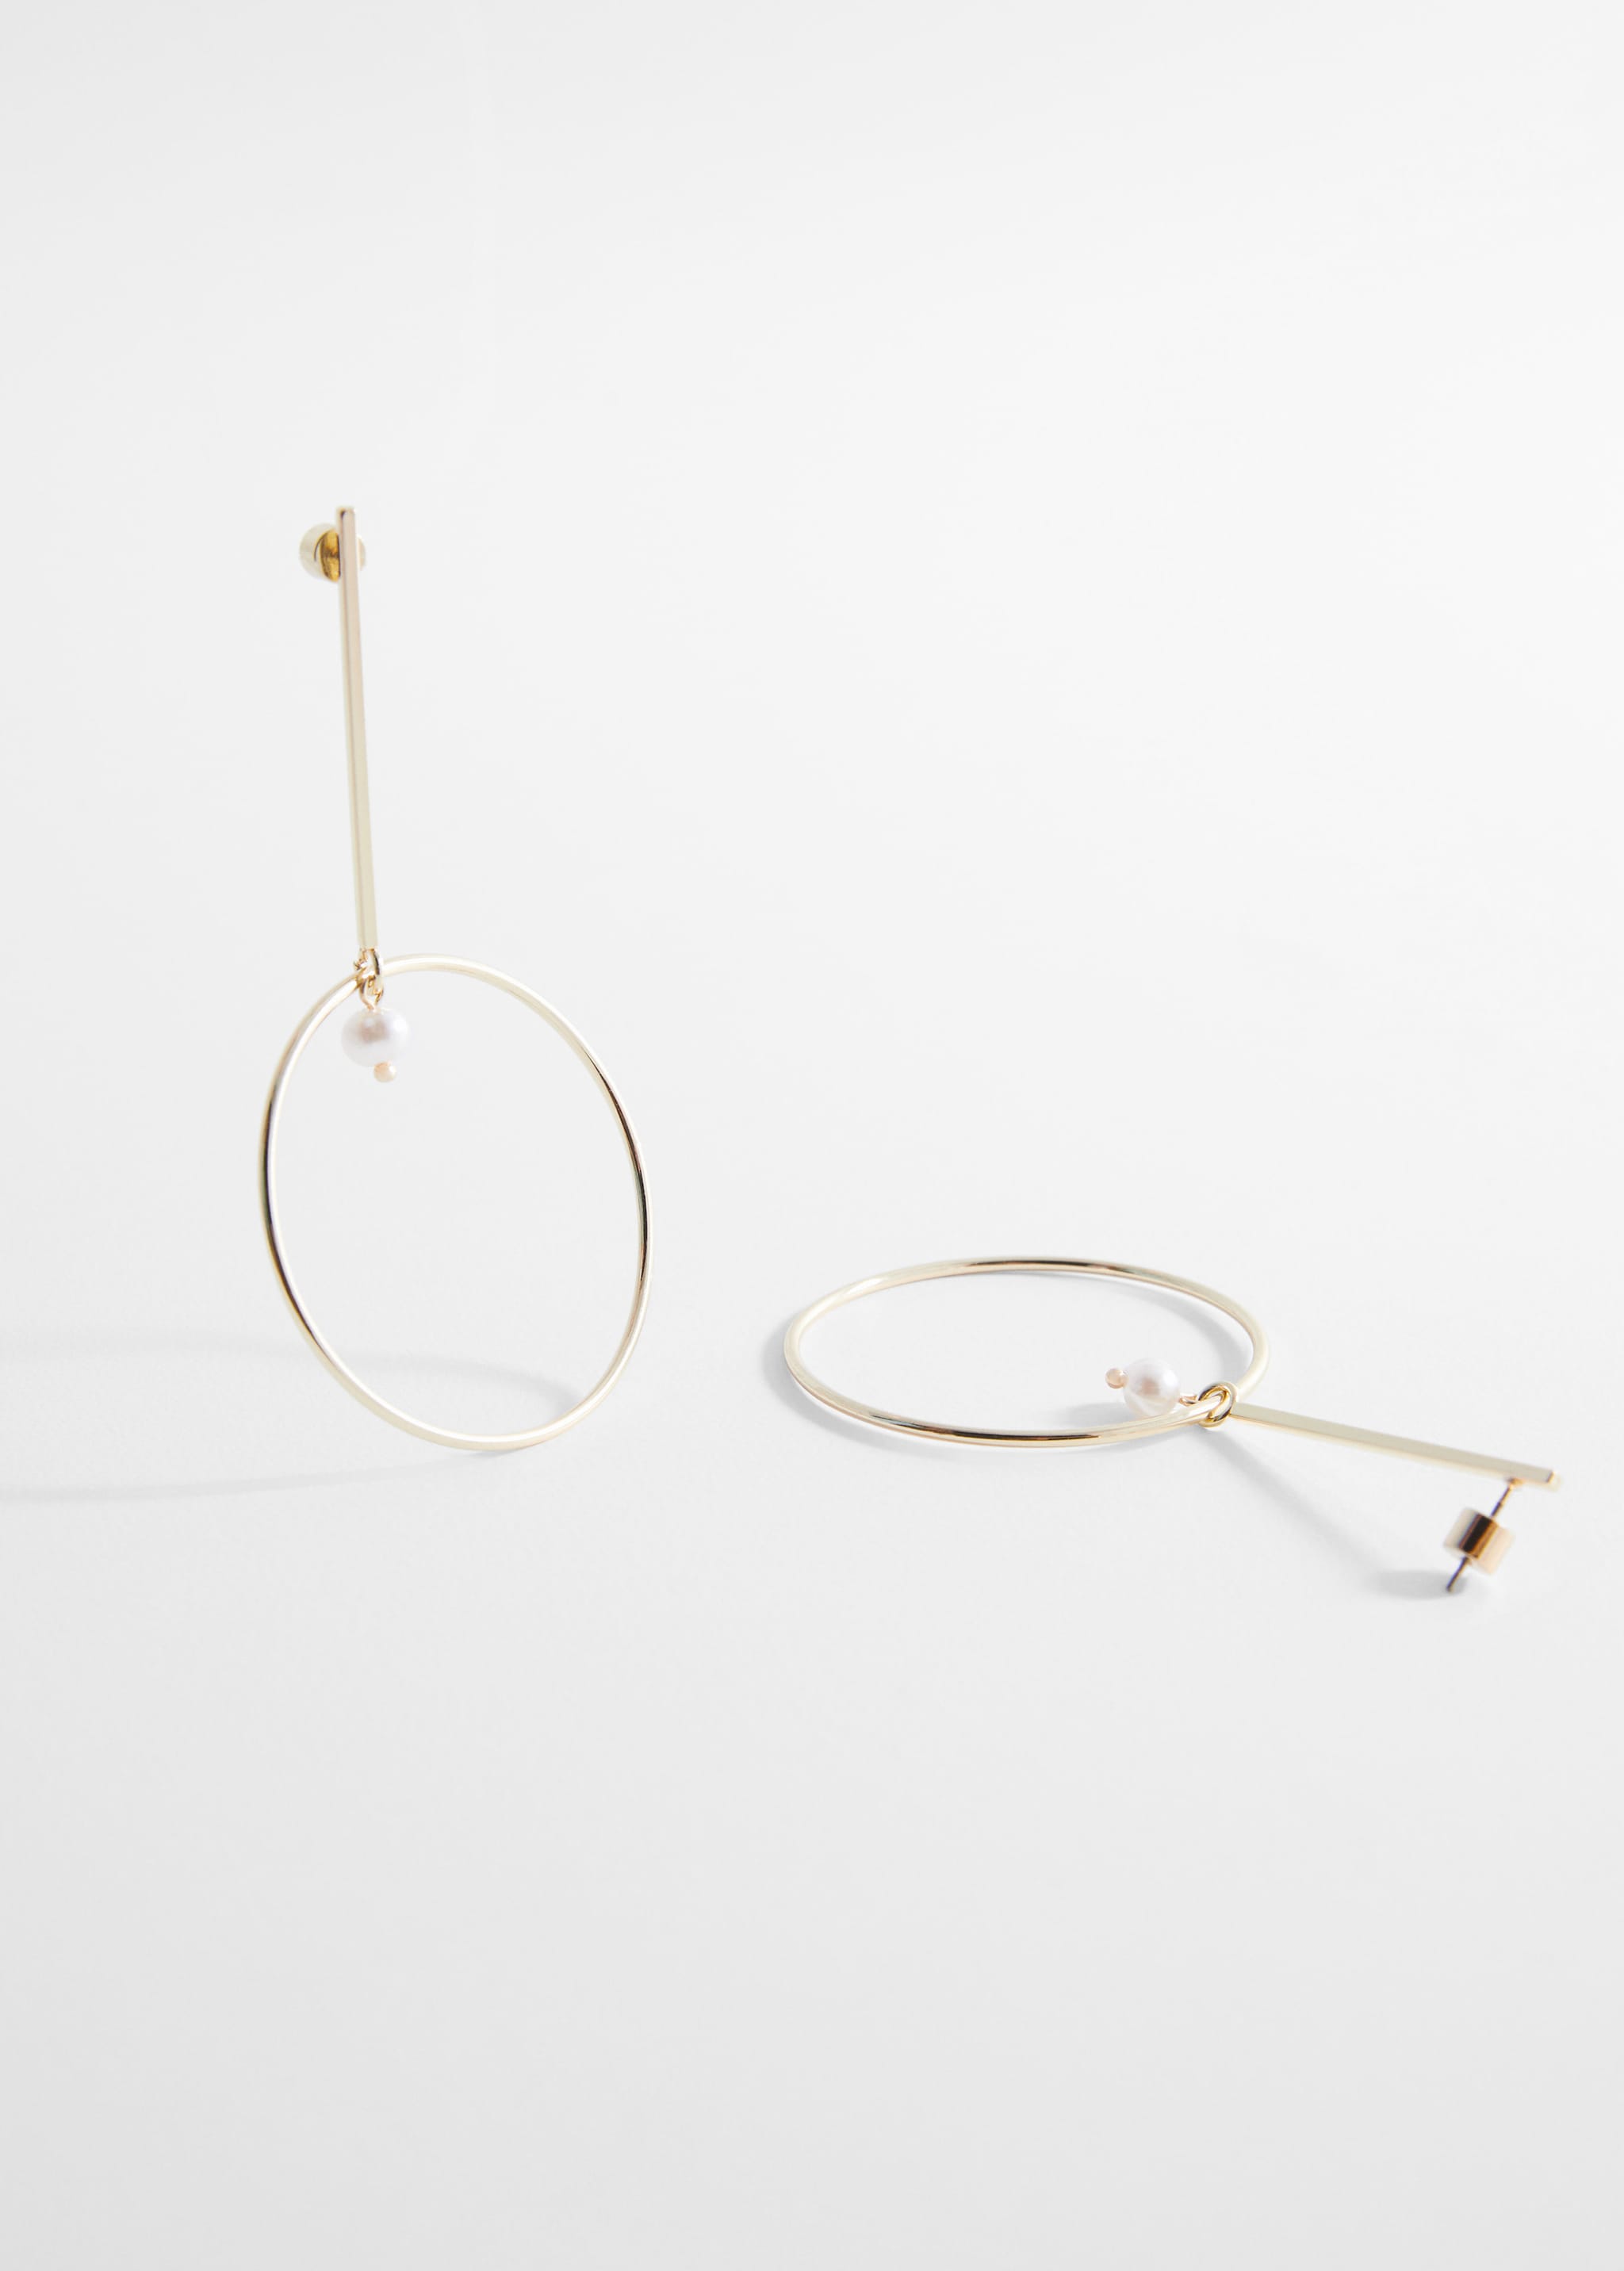 Thread hoop earrings - Medium plane